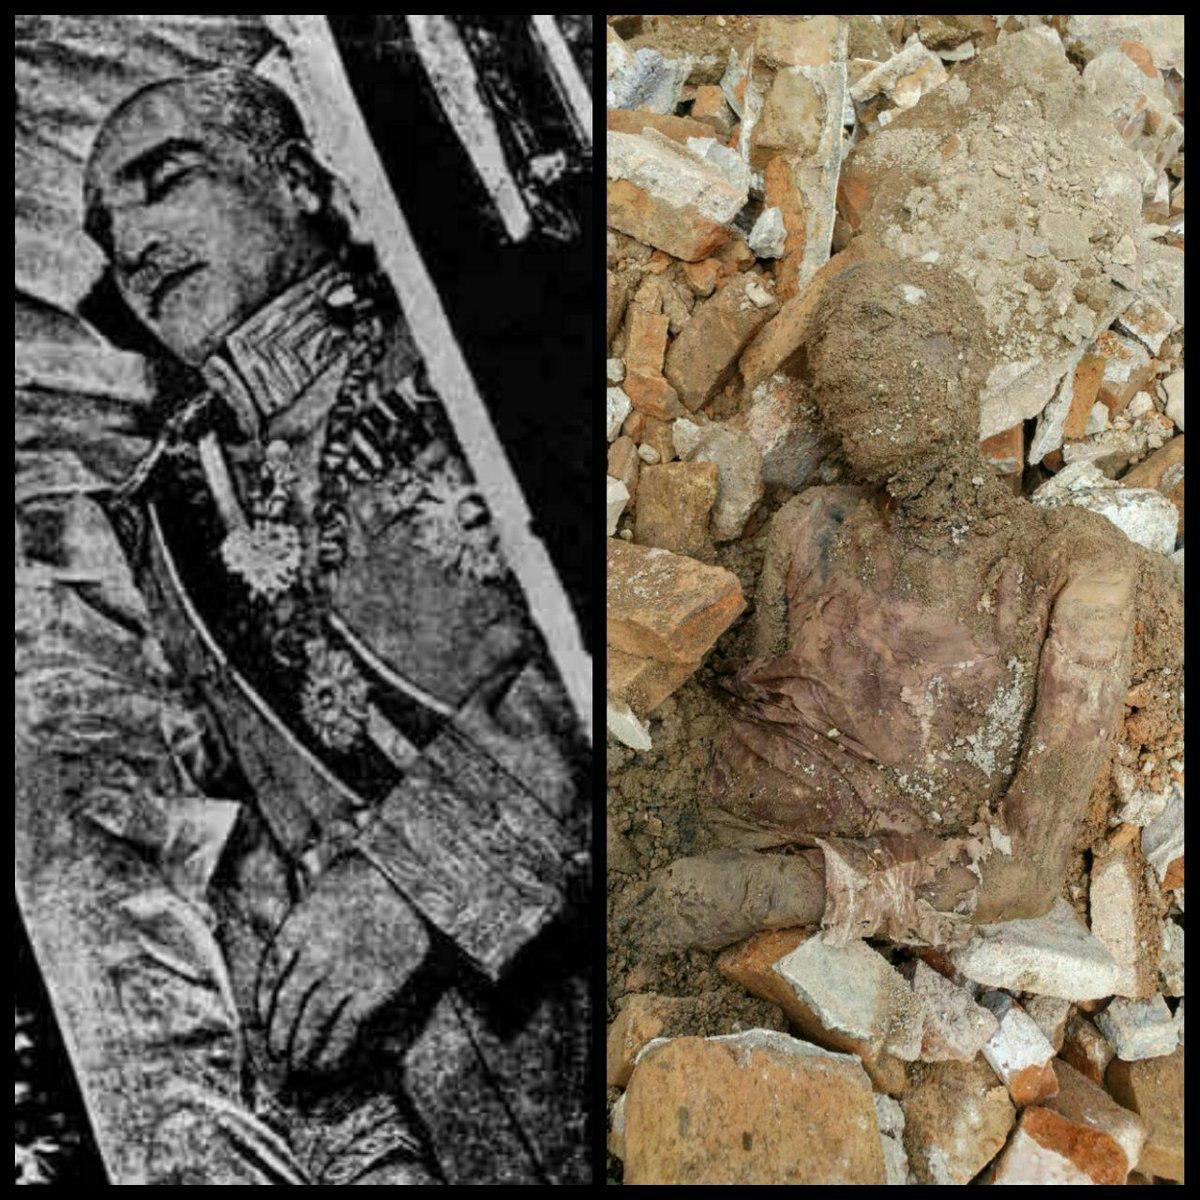 Mummified Body of Iran shah possibly found